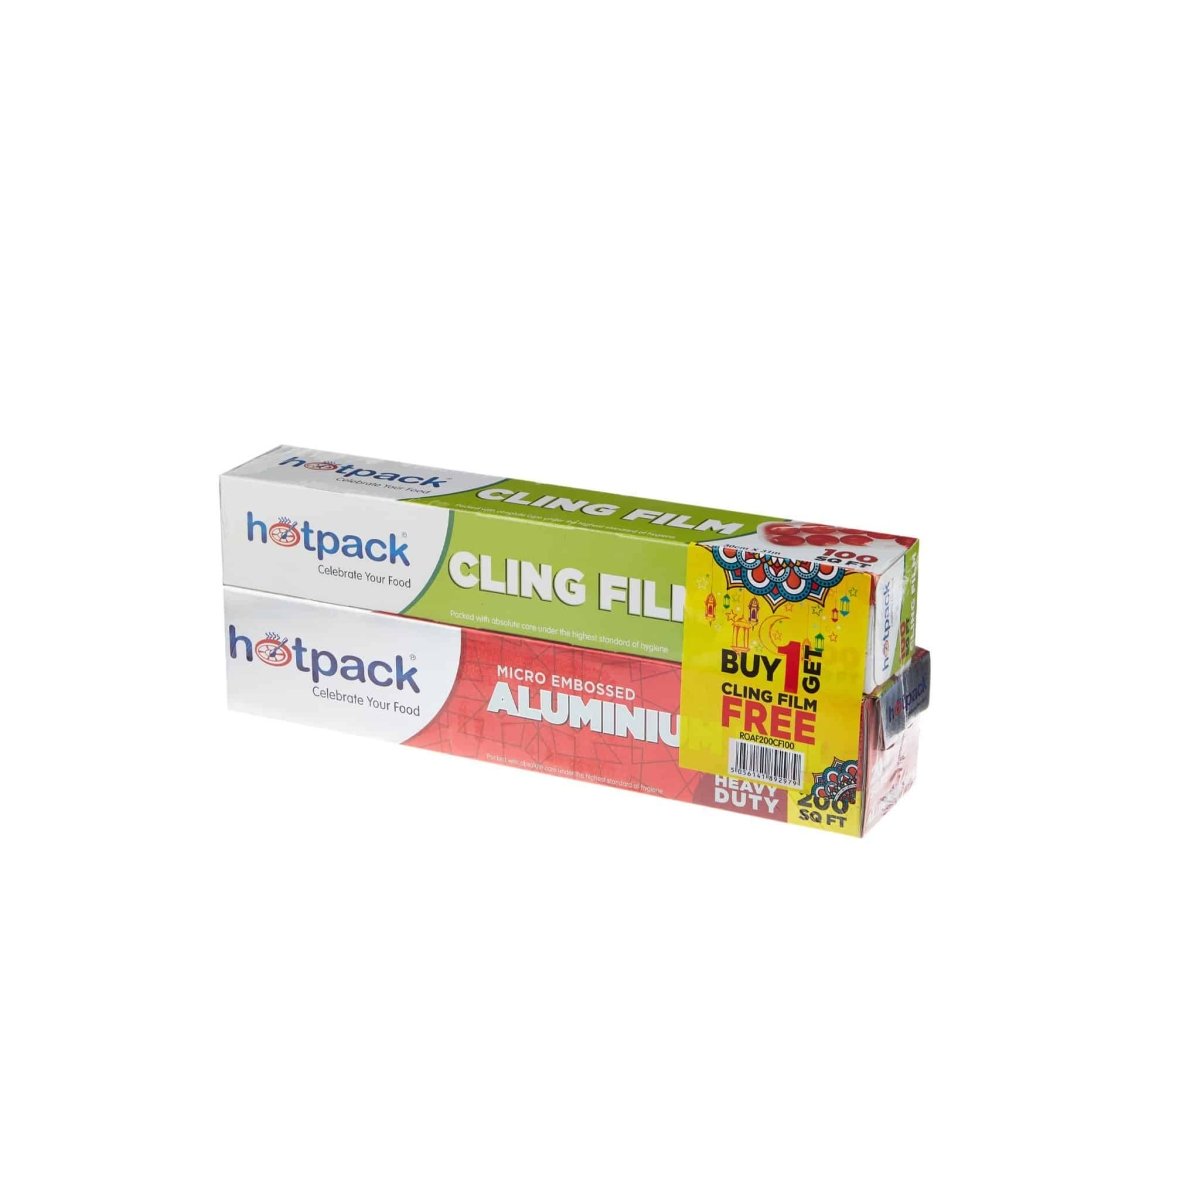 Aluminium Foil + Cling Film Combo - hotpackwebstore.com - Combo Packs